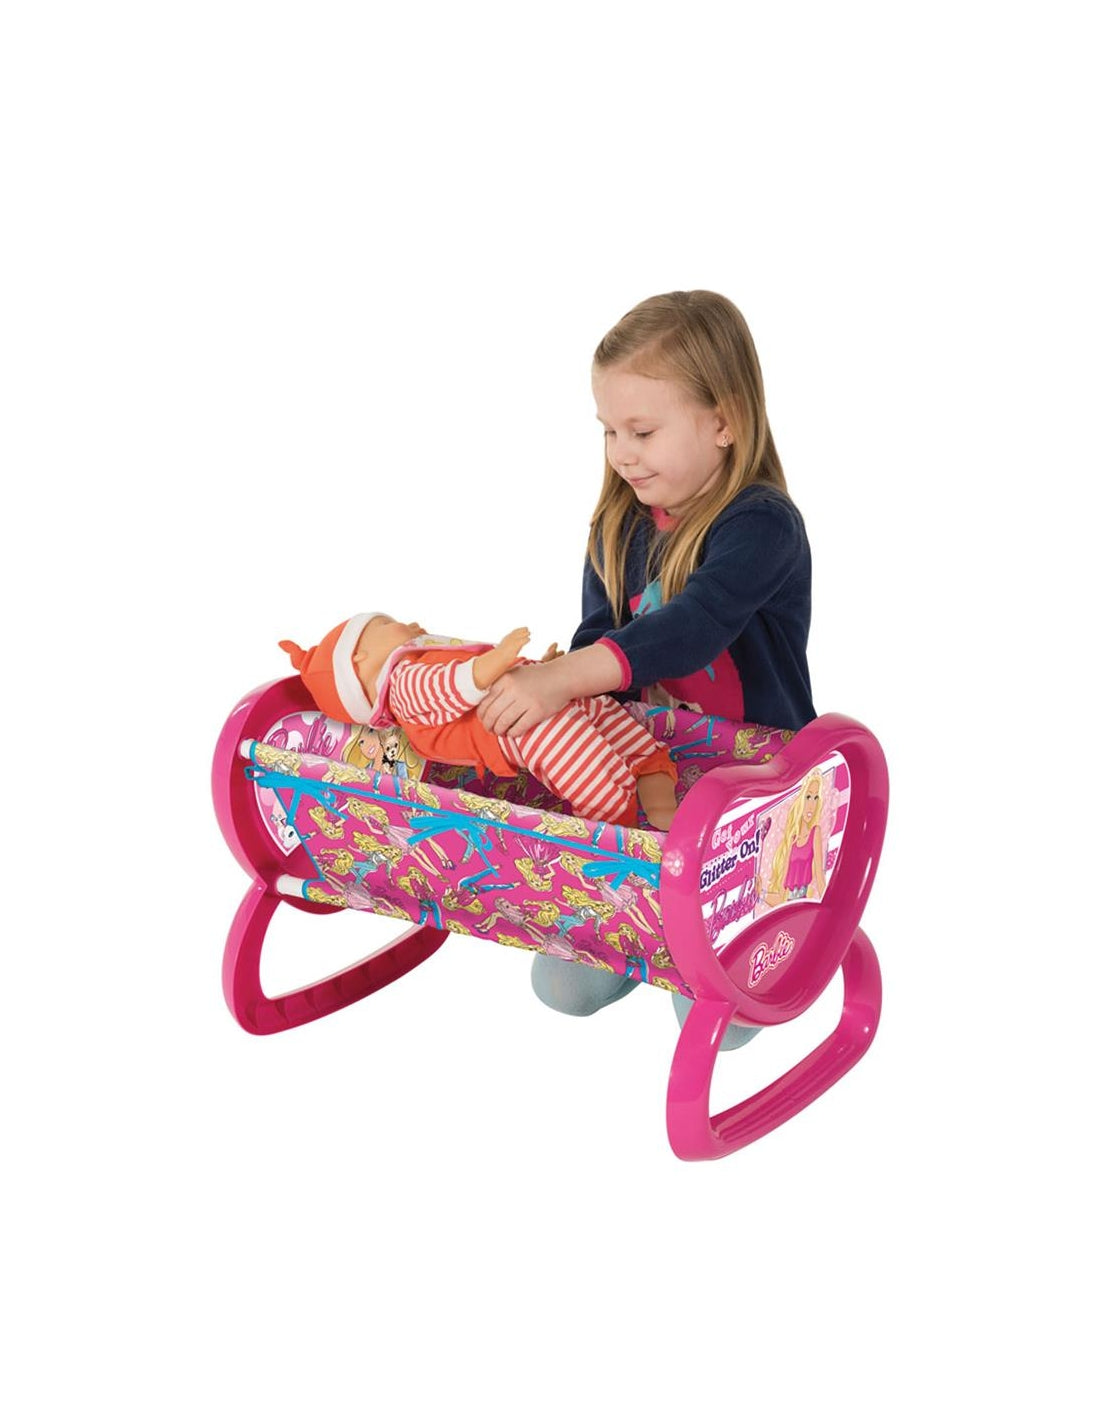 Dede Barbie Rocking Cradle Set-03037